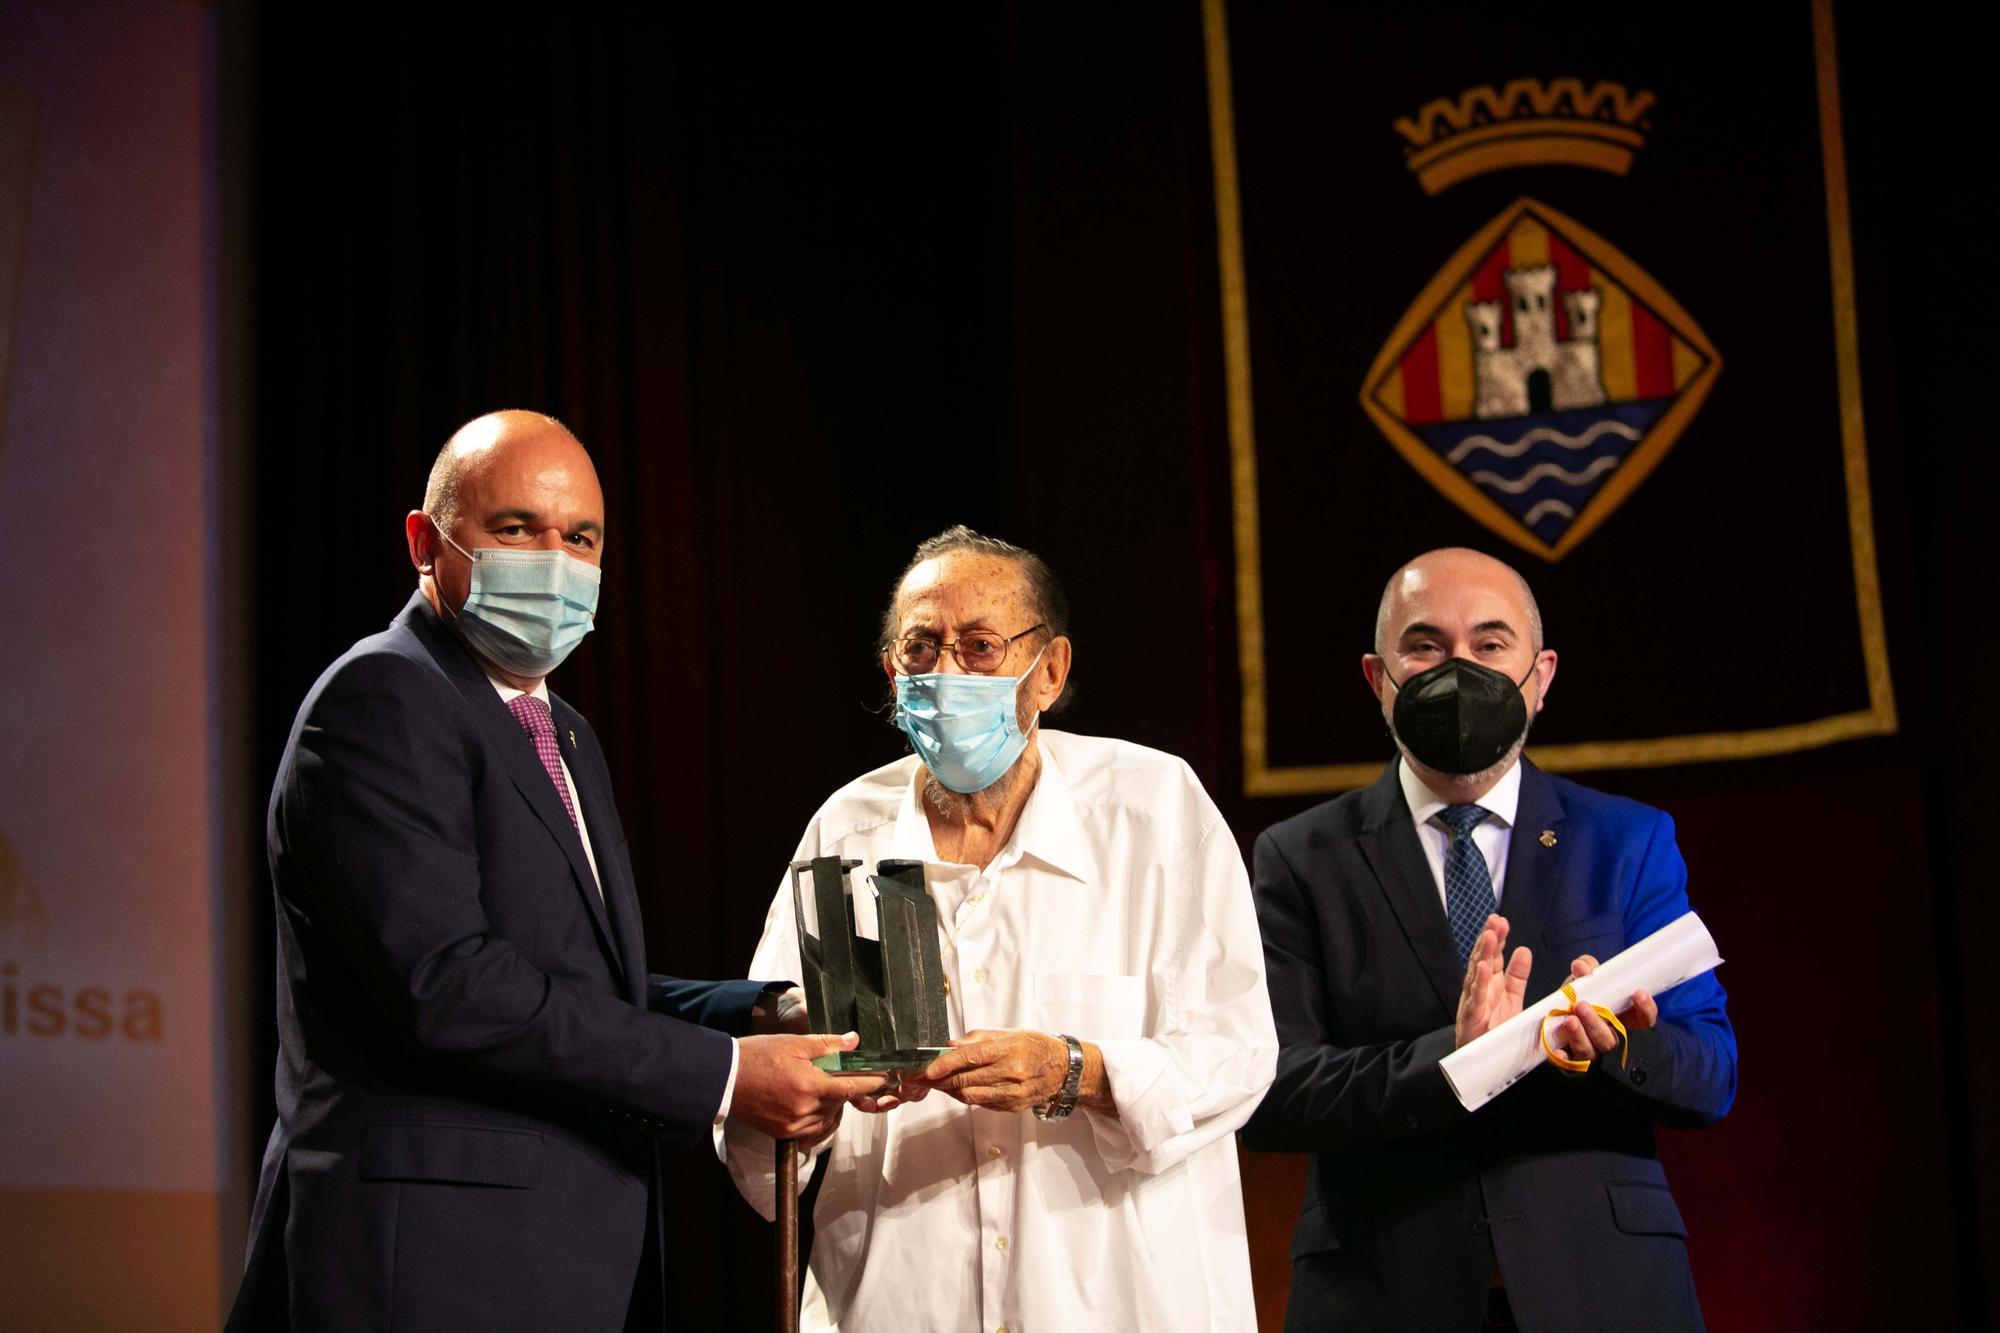 El Consell de Ibiza entrega sus premios